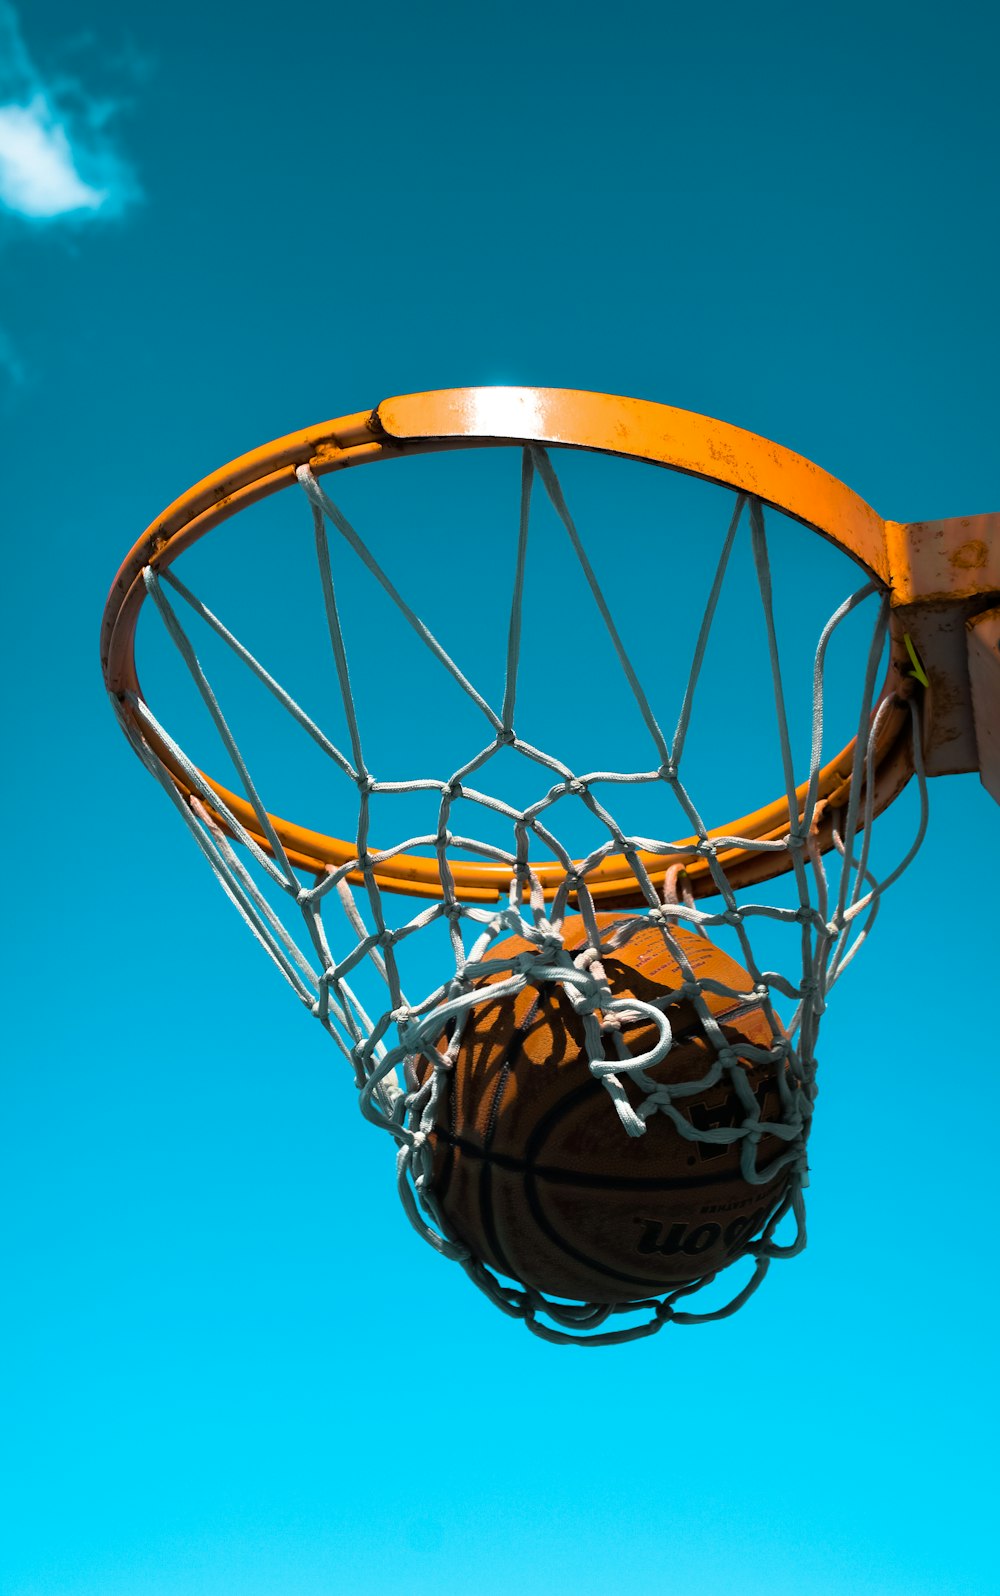 basketball on hoop with net